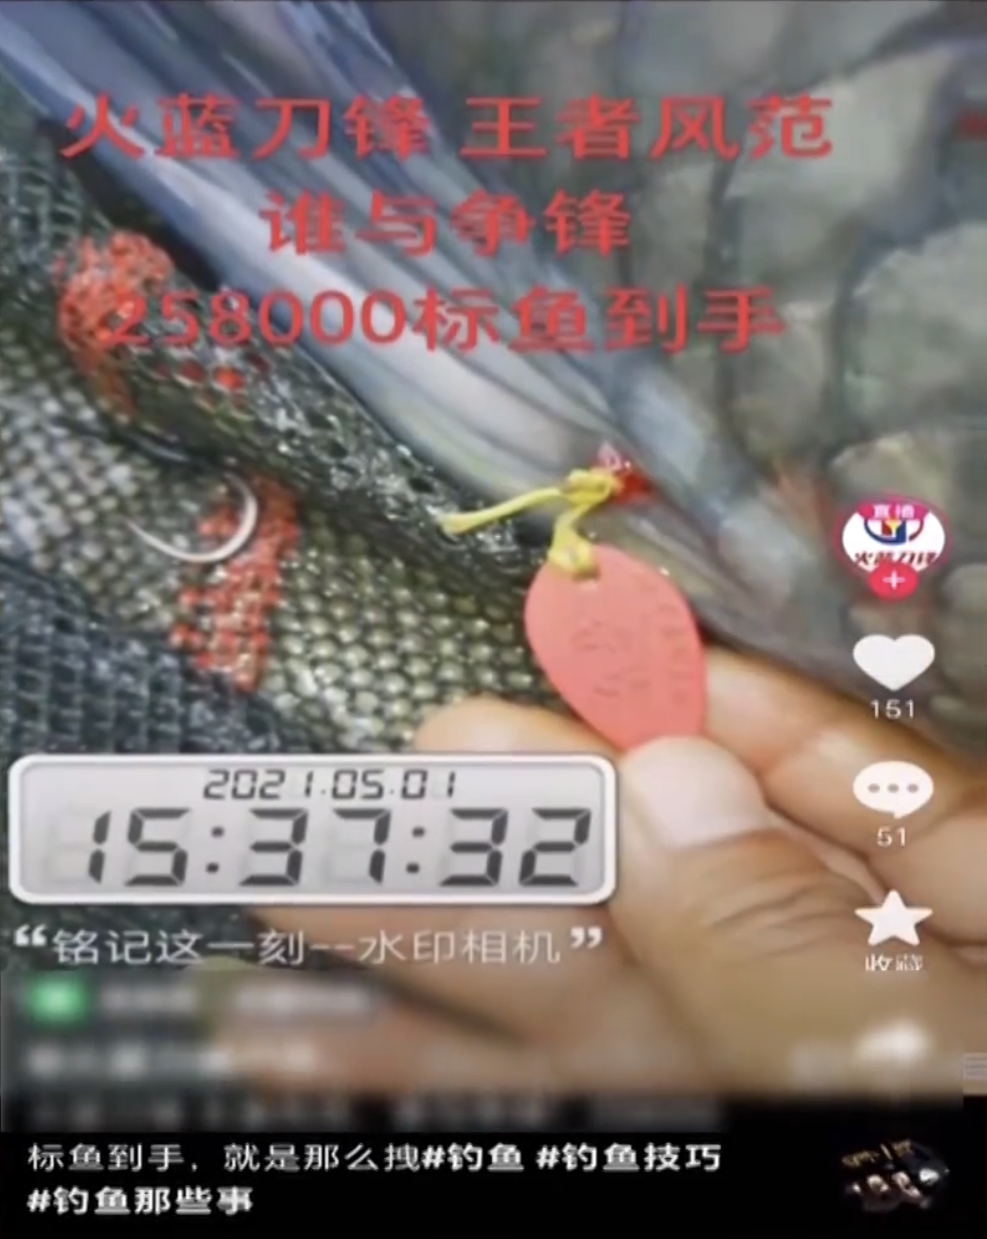 钓标鱼的影片在短视频平台有一定捧场客。